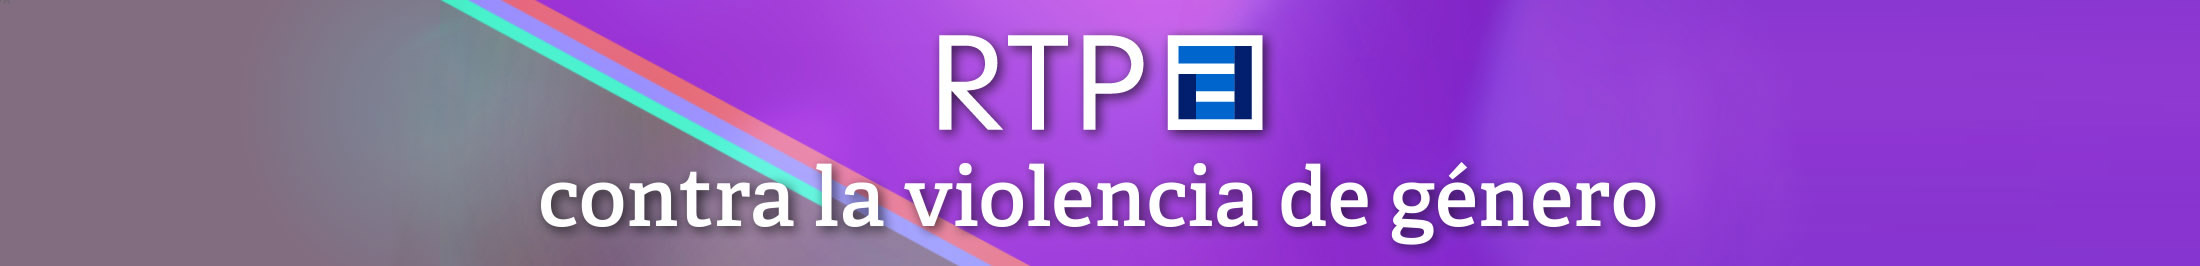 RTPA contra la violencia de género